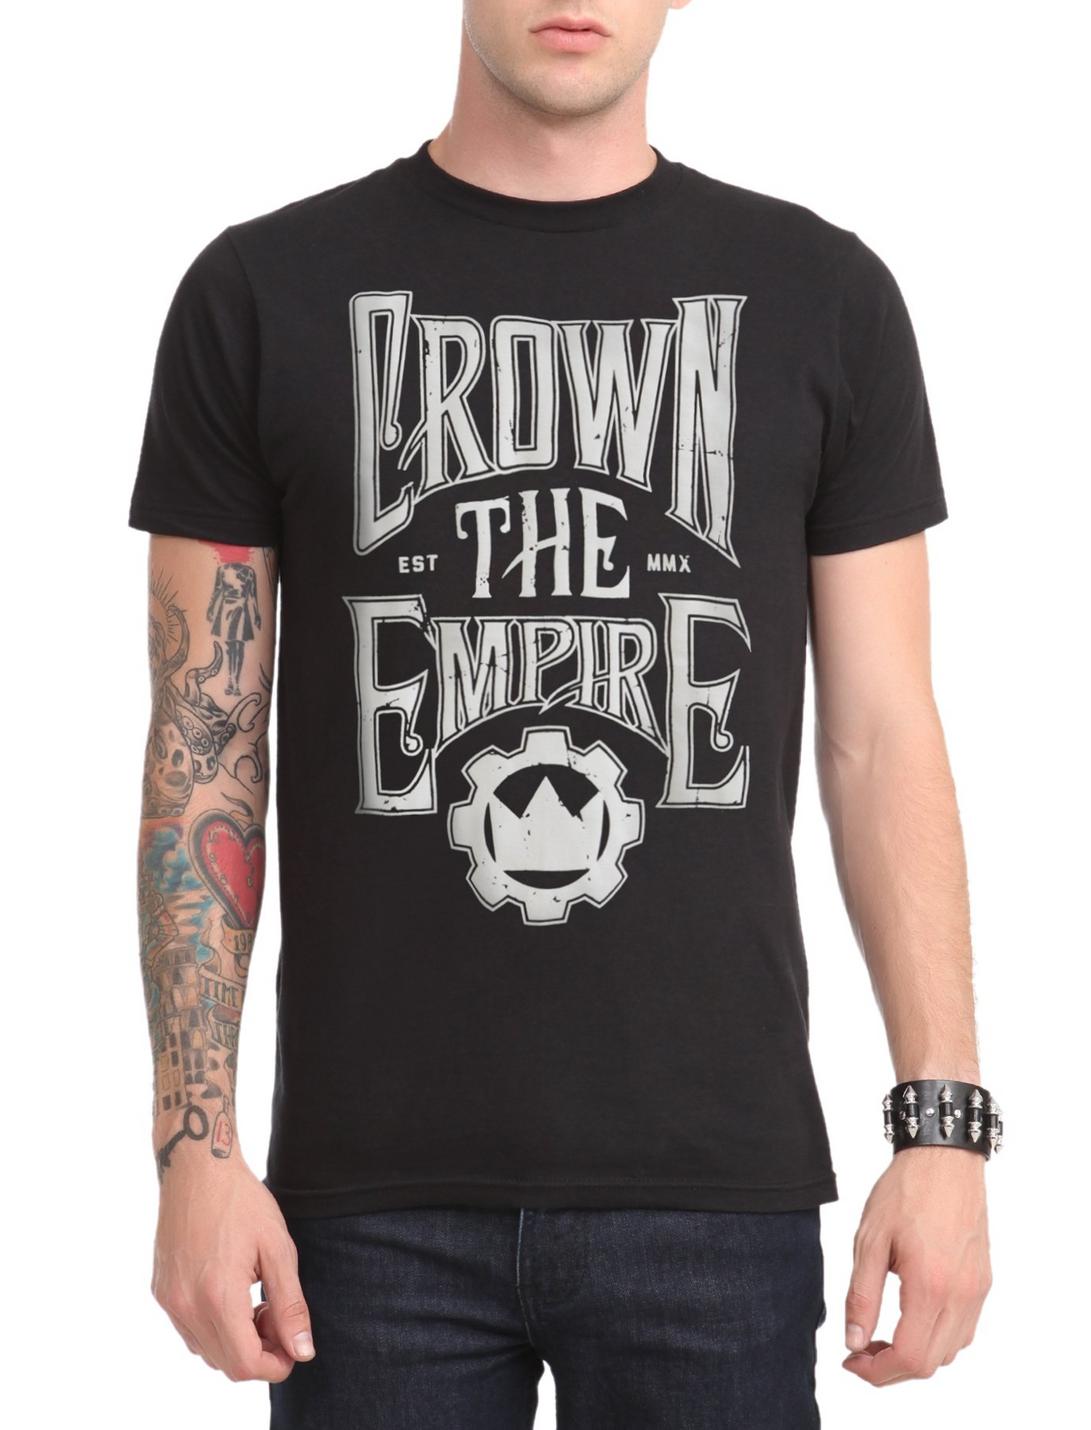 Crown The Empire Est MMX T-Shirt, BLACK, hi-res